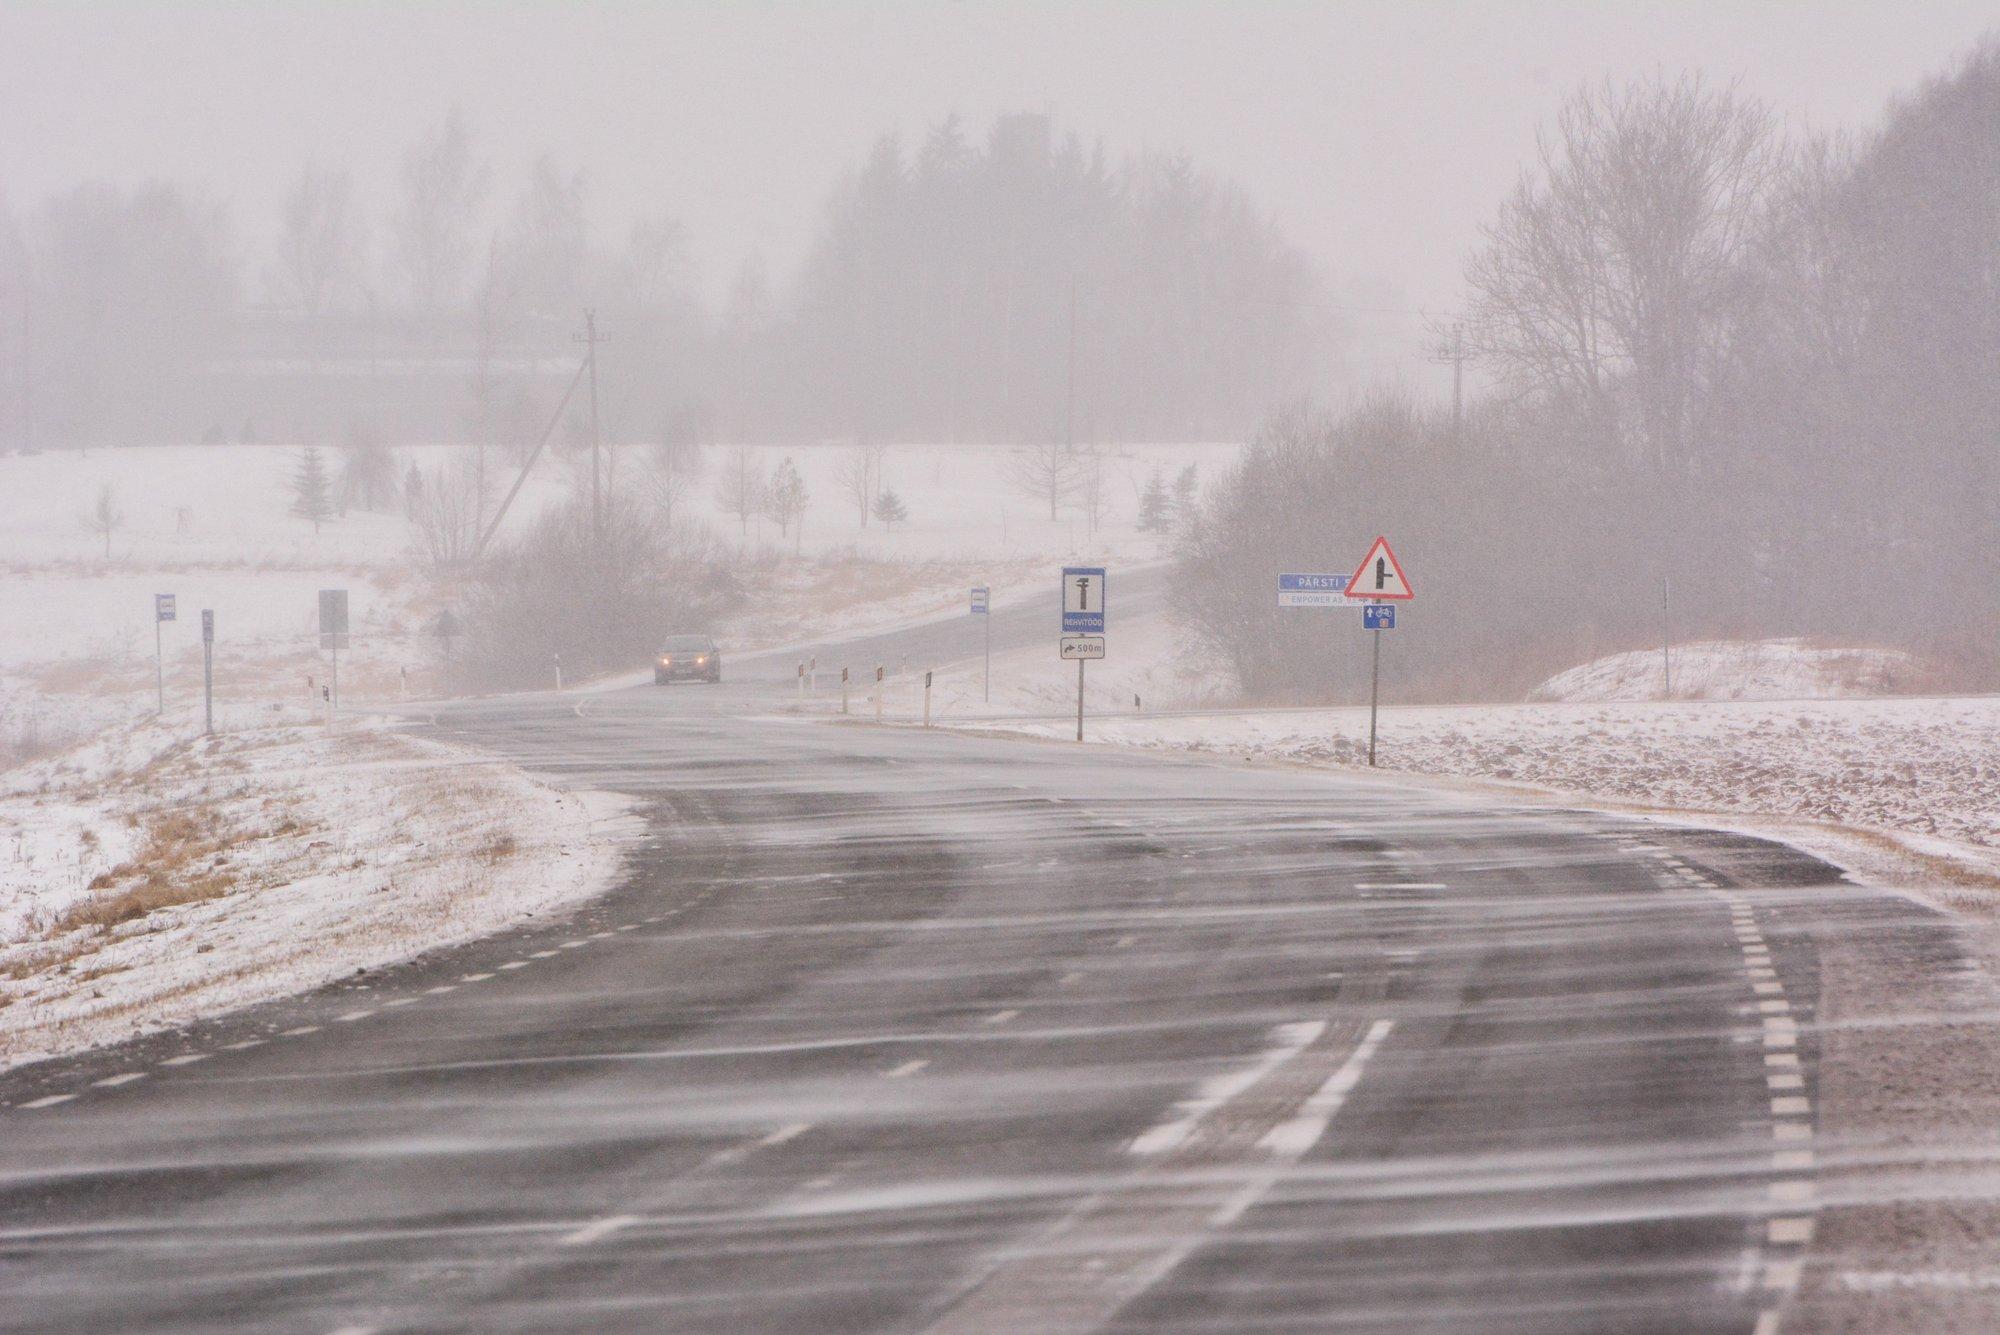 ПРОГНОЗ ПОГОДЫ | В течение дня будет идти снег, мокрый снег, а также дождь. На дорогах возможна гололедица